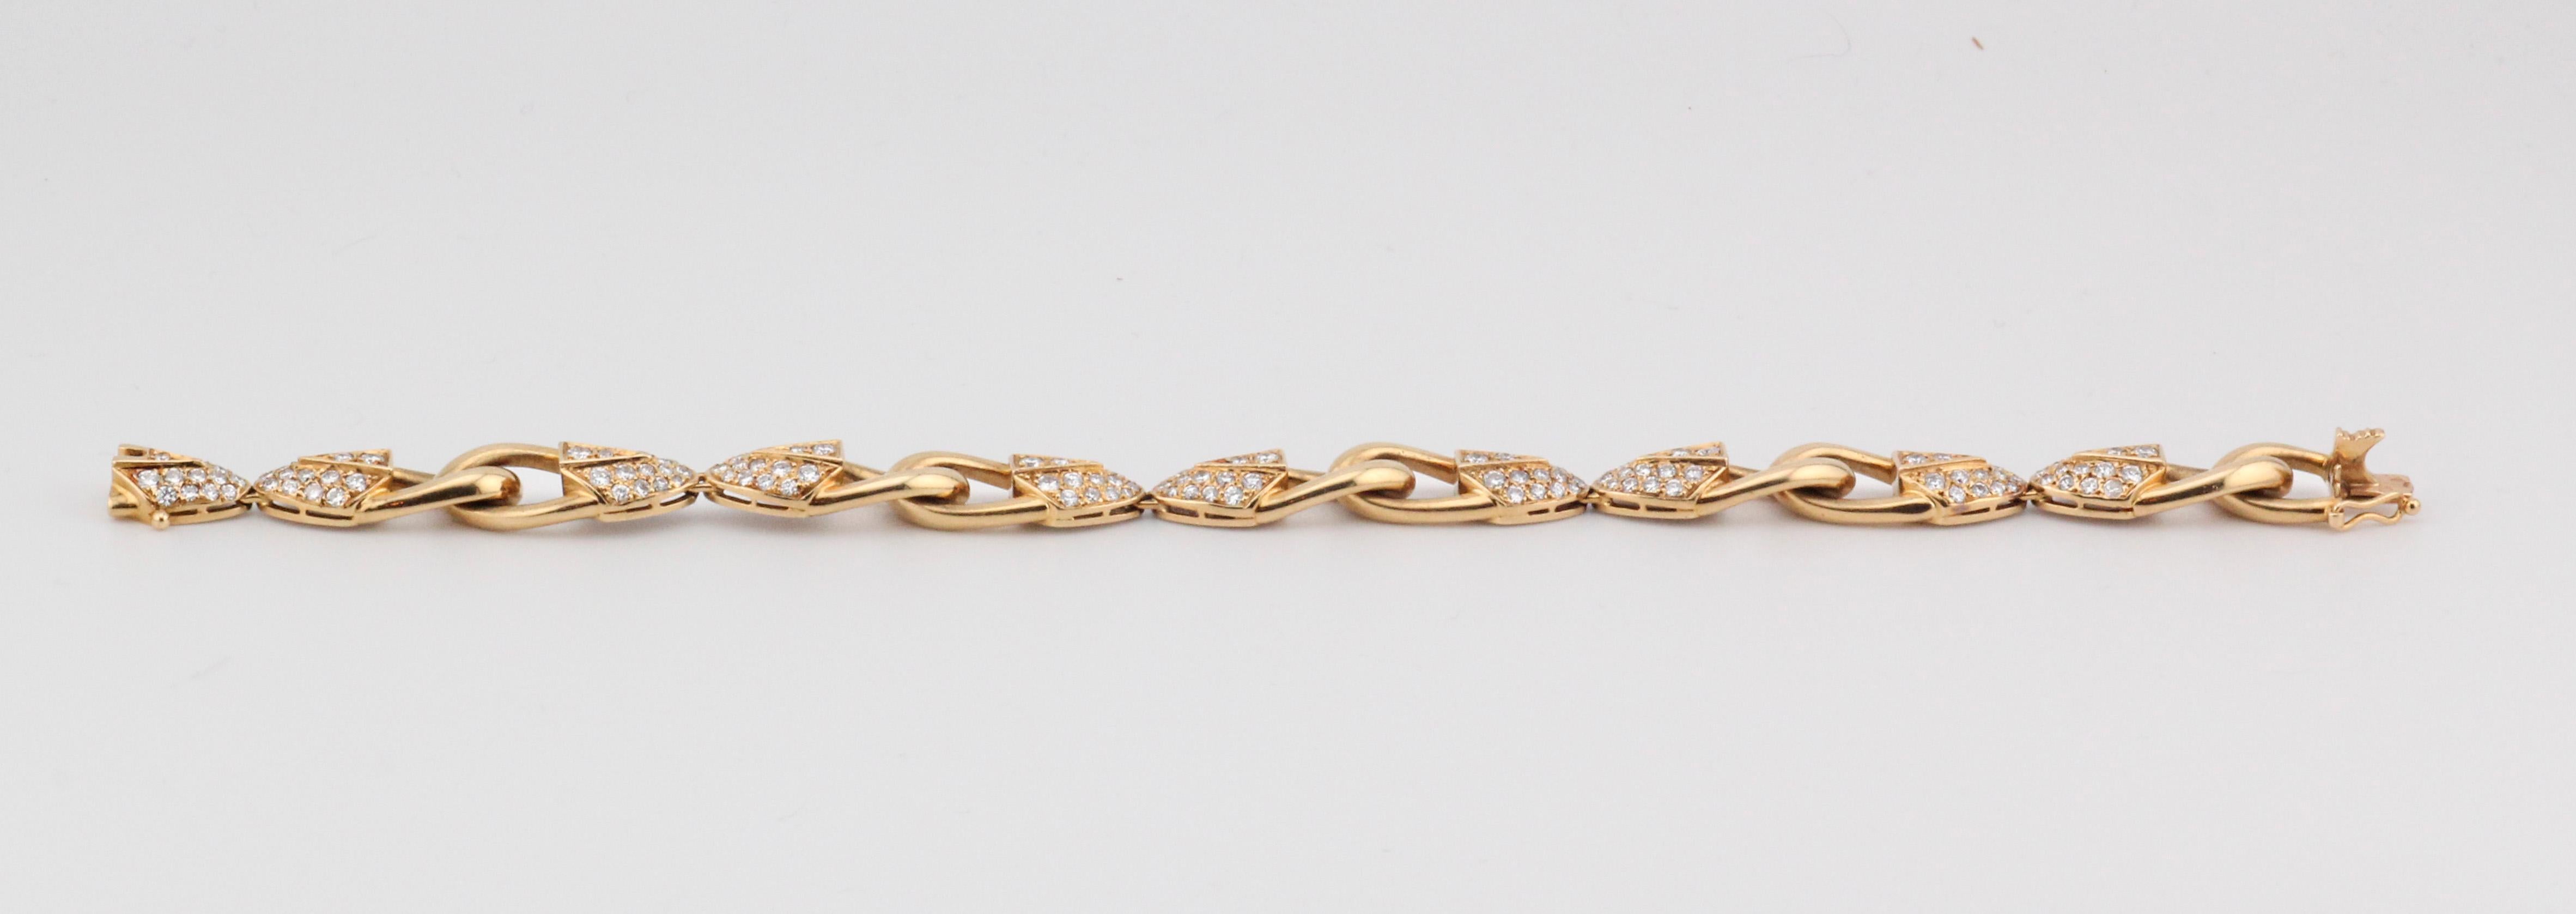 Piaget Brilliant Cut Diamond 18k Yellow Gold Link Bracelet For Sale 1